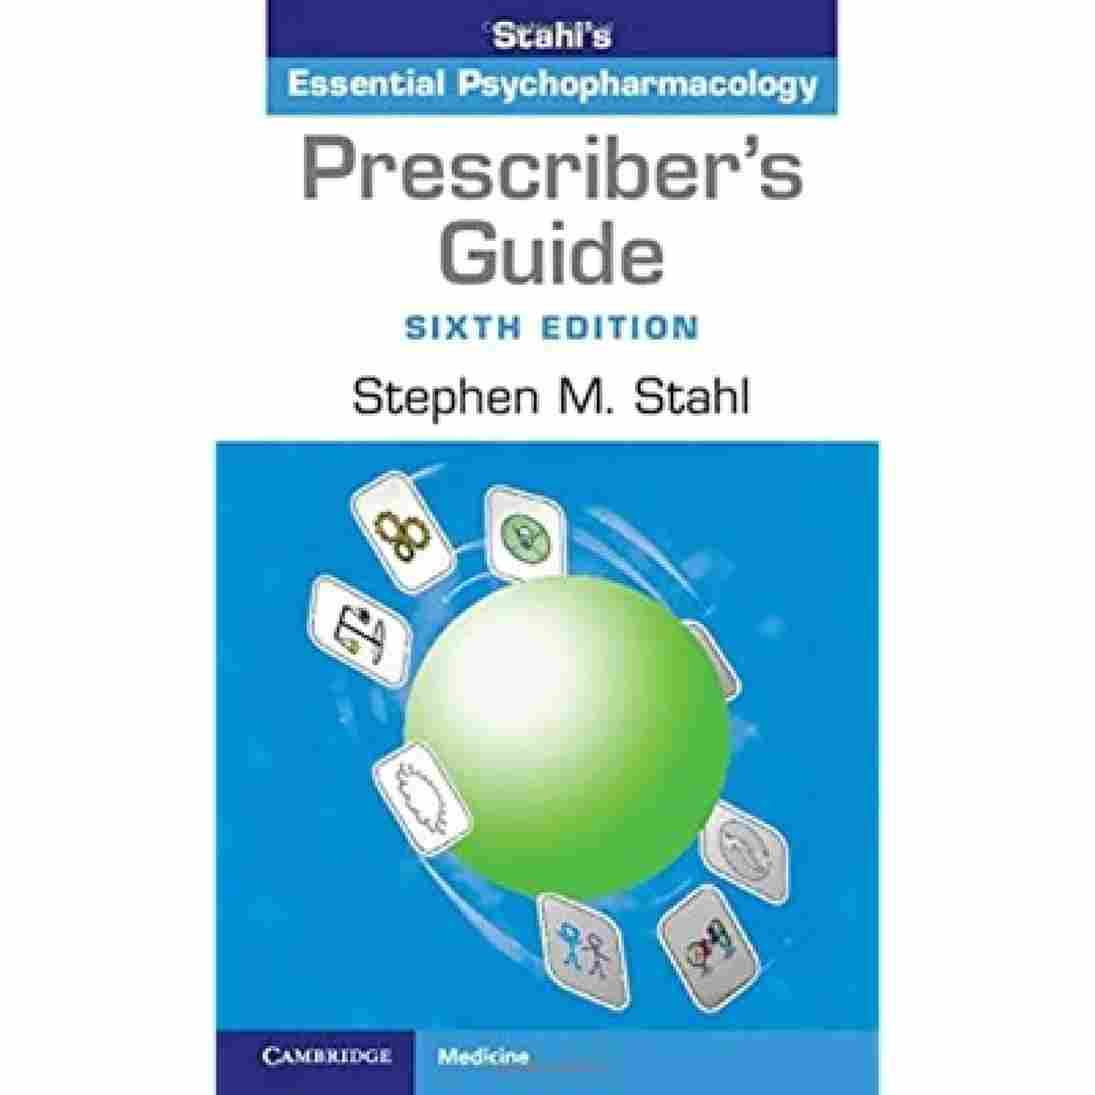 Prescriber's Guide - 6th Edition  - Stephen M. Stahl